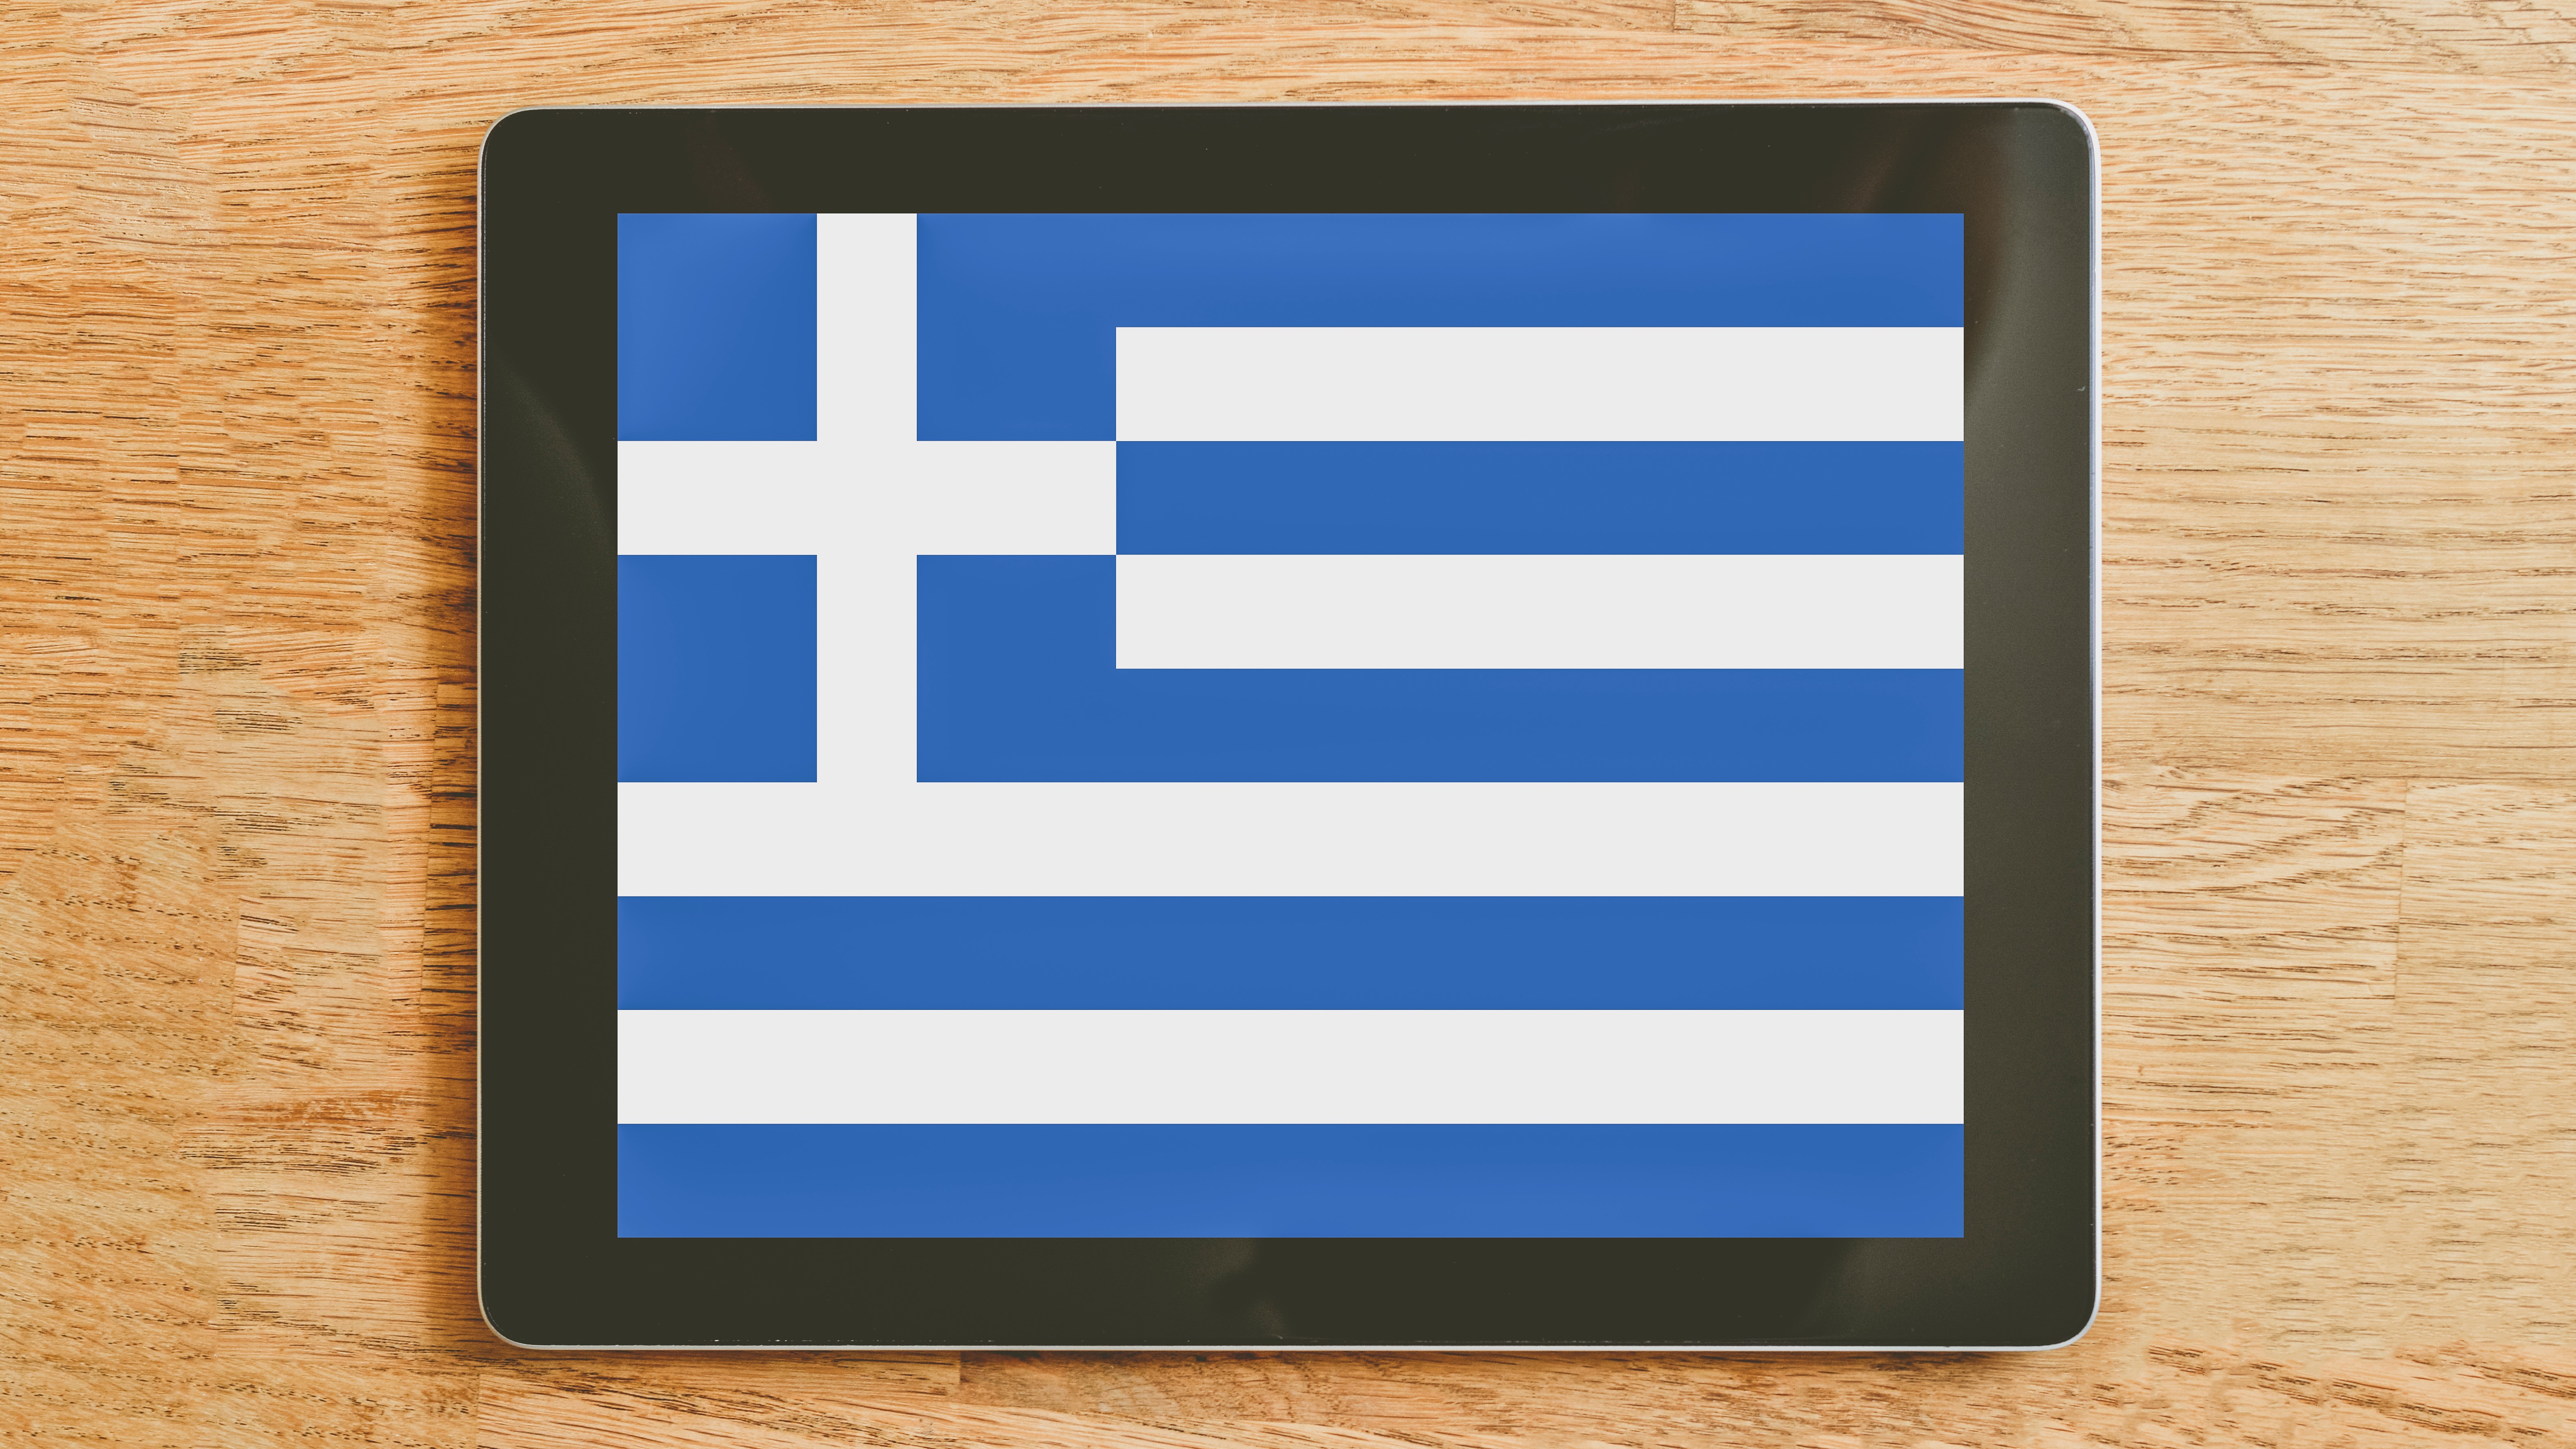 Informations pour les projets impliquant des coproducteurs grecs